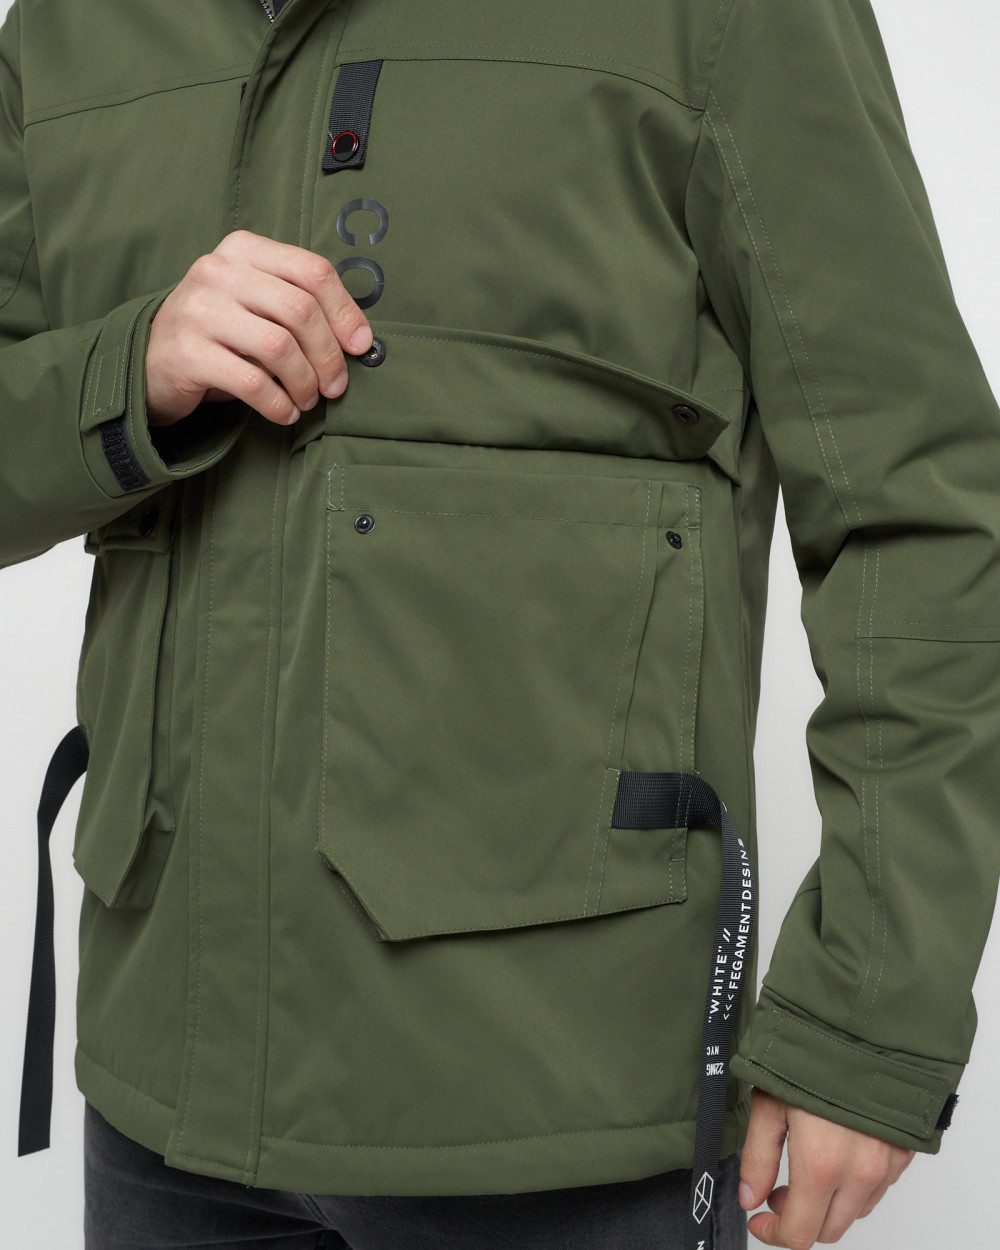 Купить куртку мужскую спортивную весеннюю оптом от производителя недорого в Москве 8600Kh 1